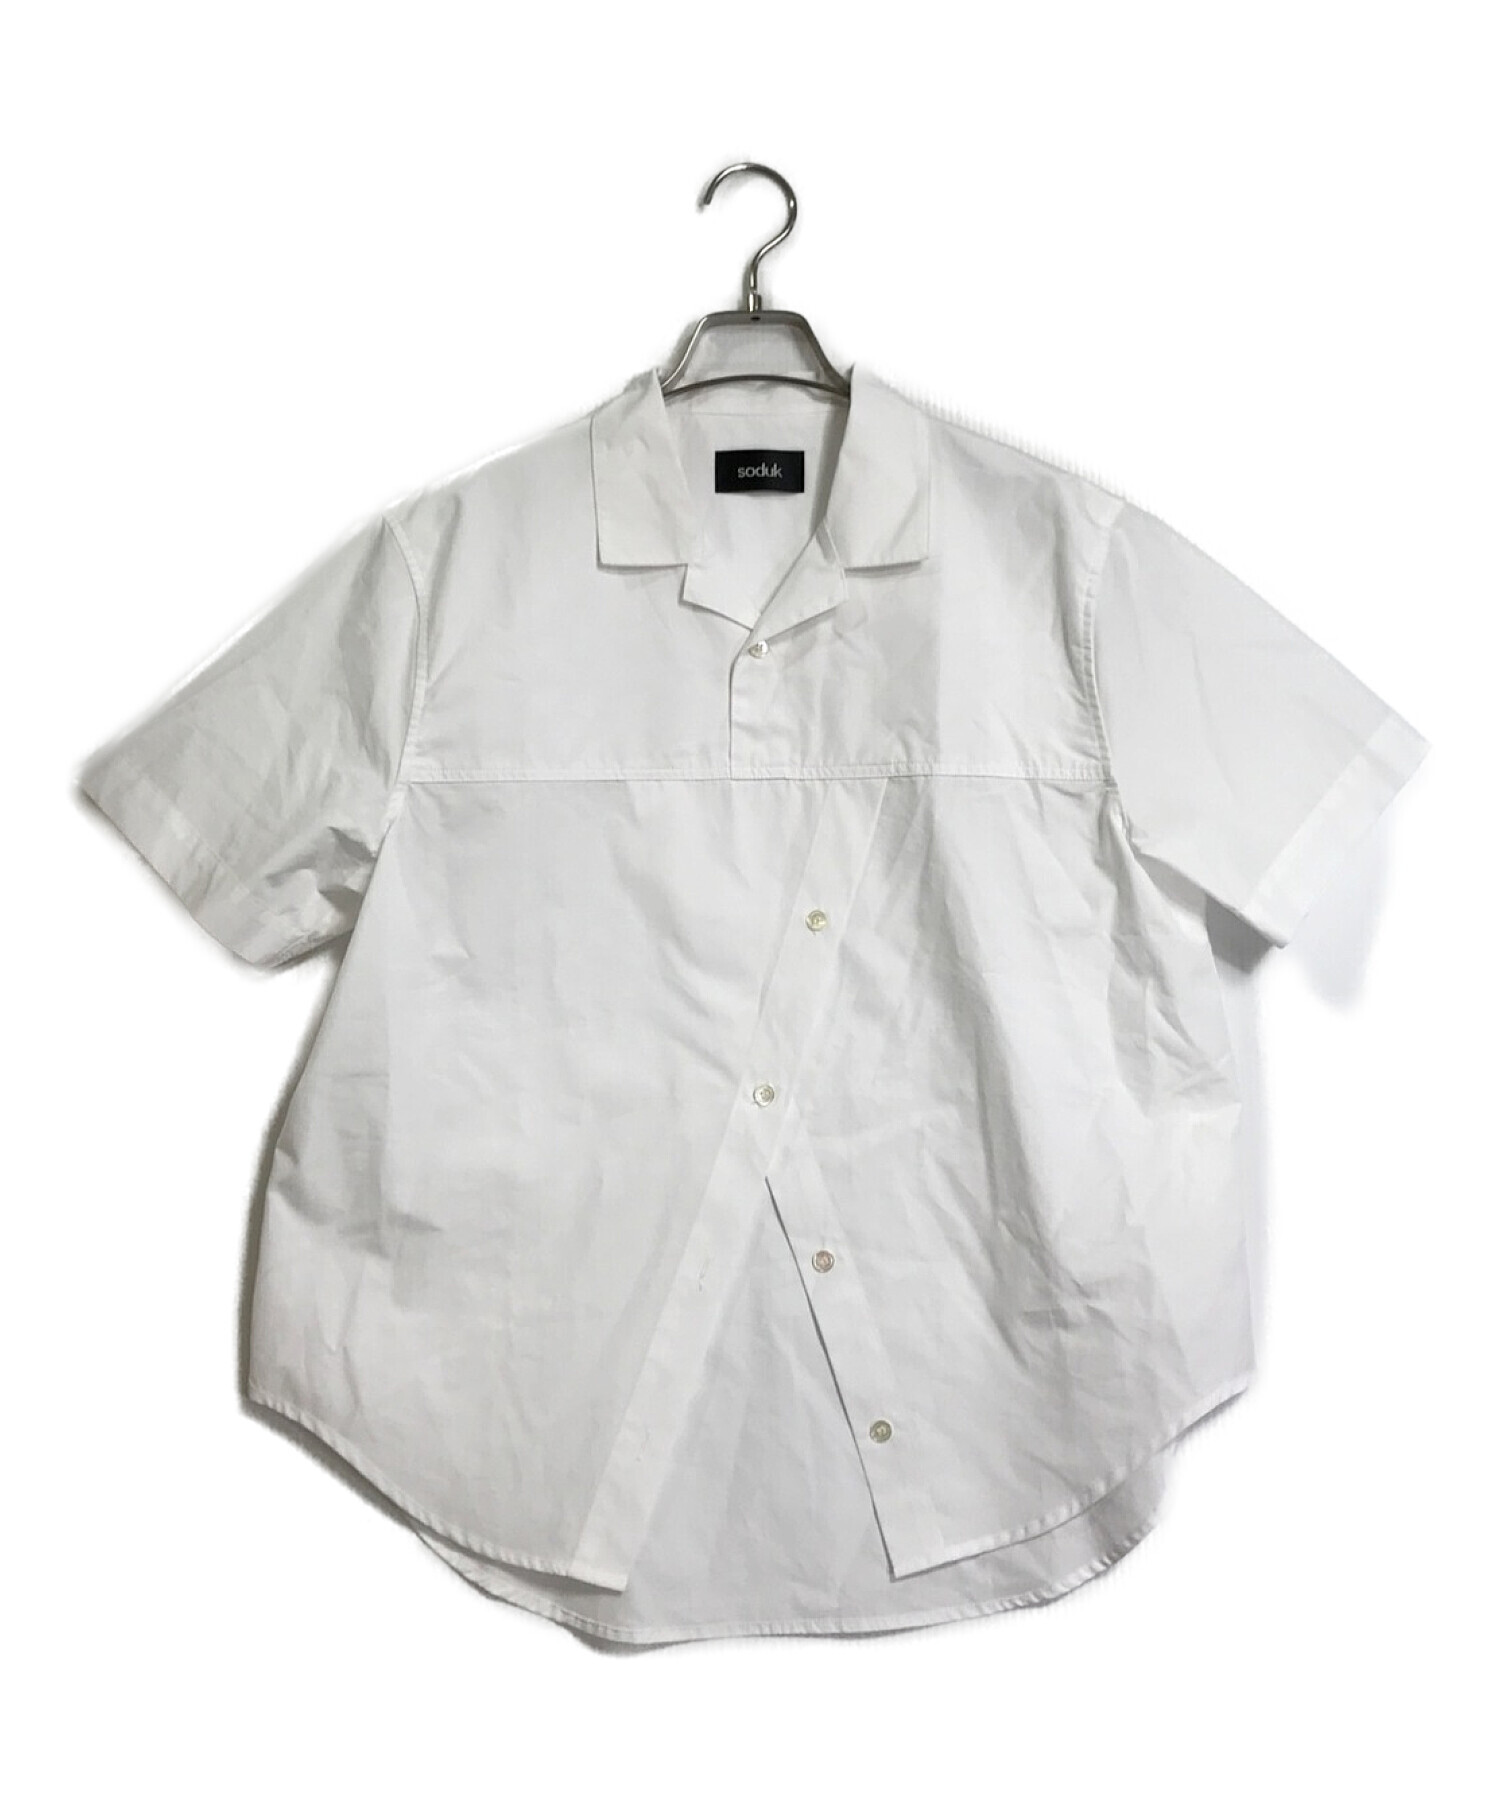 soduk (スドーク) デザインシャツ ホワイト サイズ:下記参照